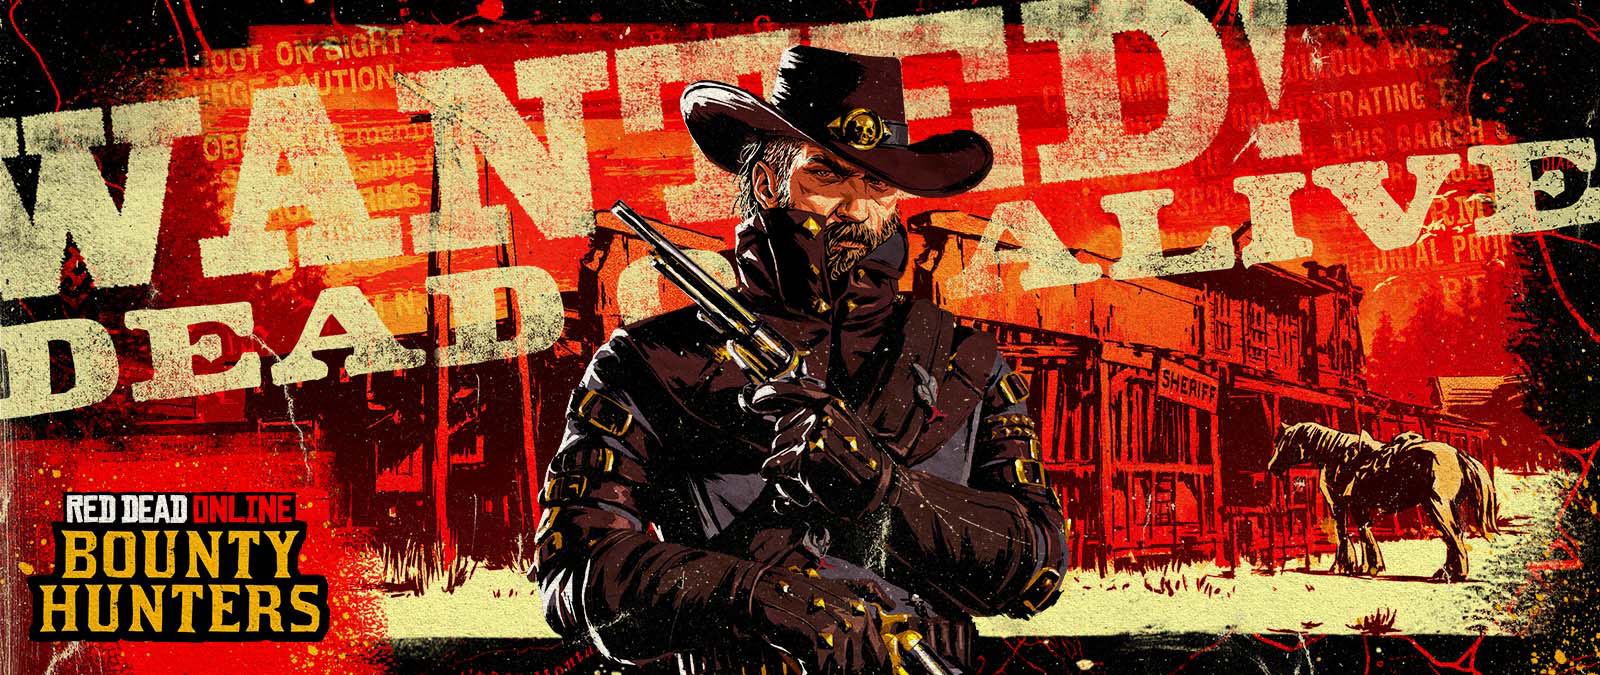 Red Dead Online: Bounty Hunters. Gezocht! Dood of levend. Een cowboy met twee revolvers voor een oud sheriffgebouw.